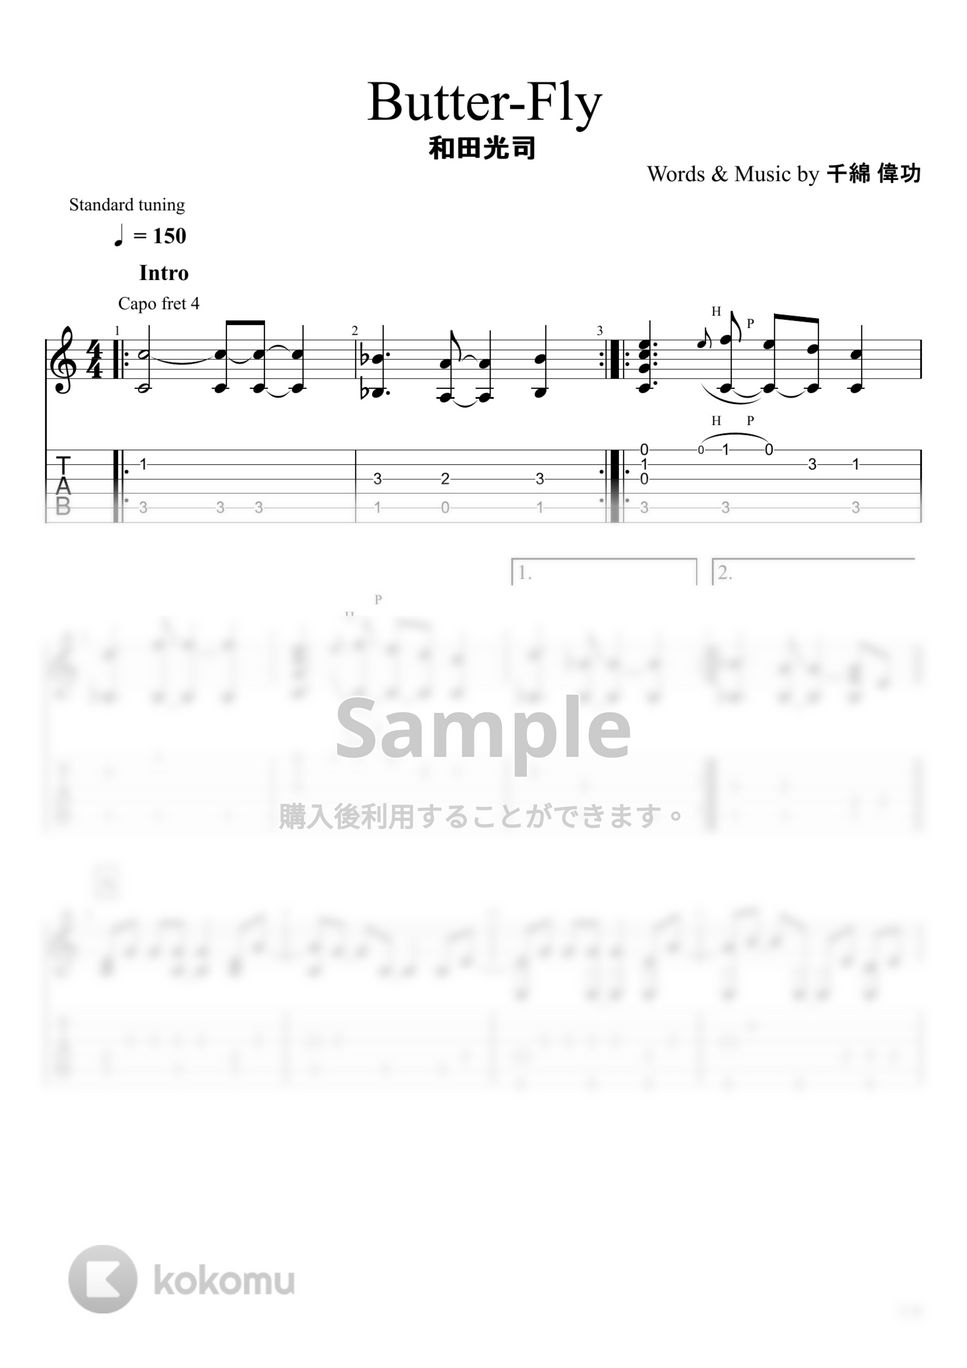 和田光司 - Butter-Fly (ソロギター) by u3danchou